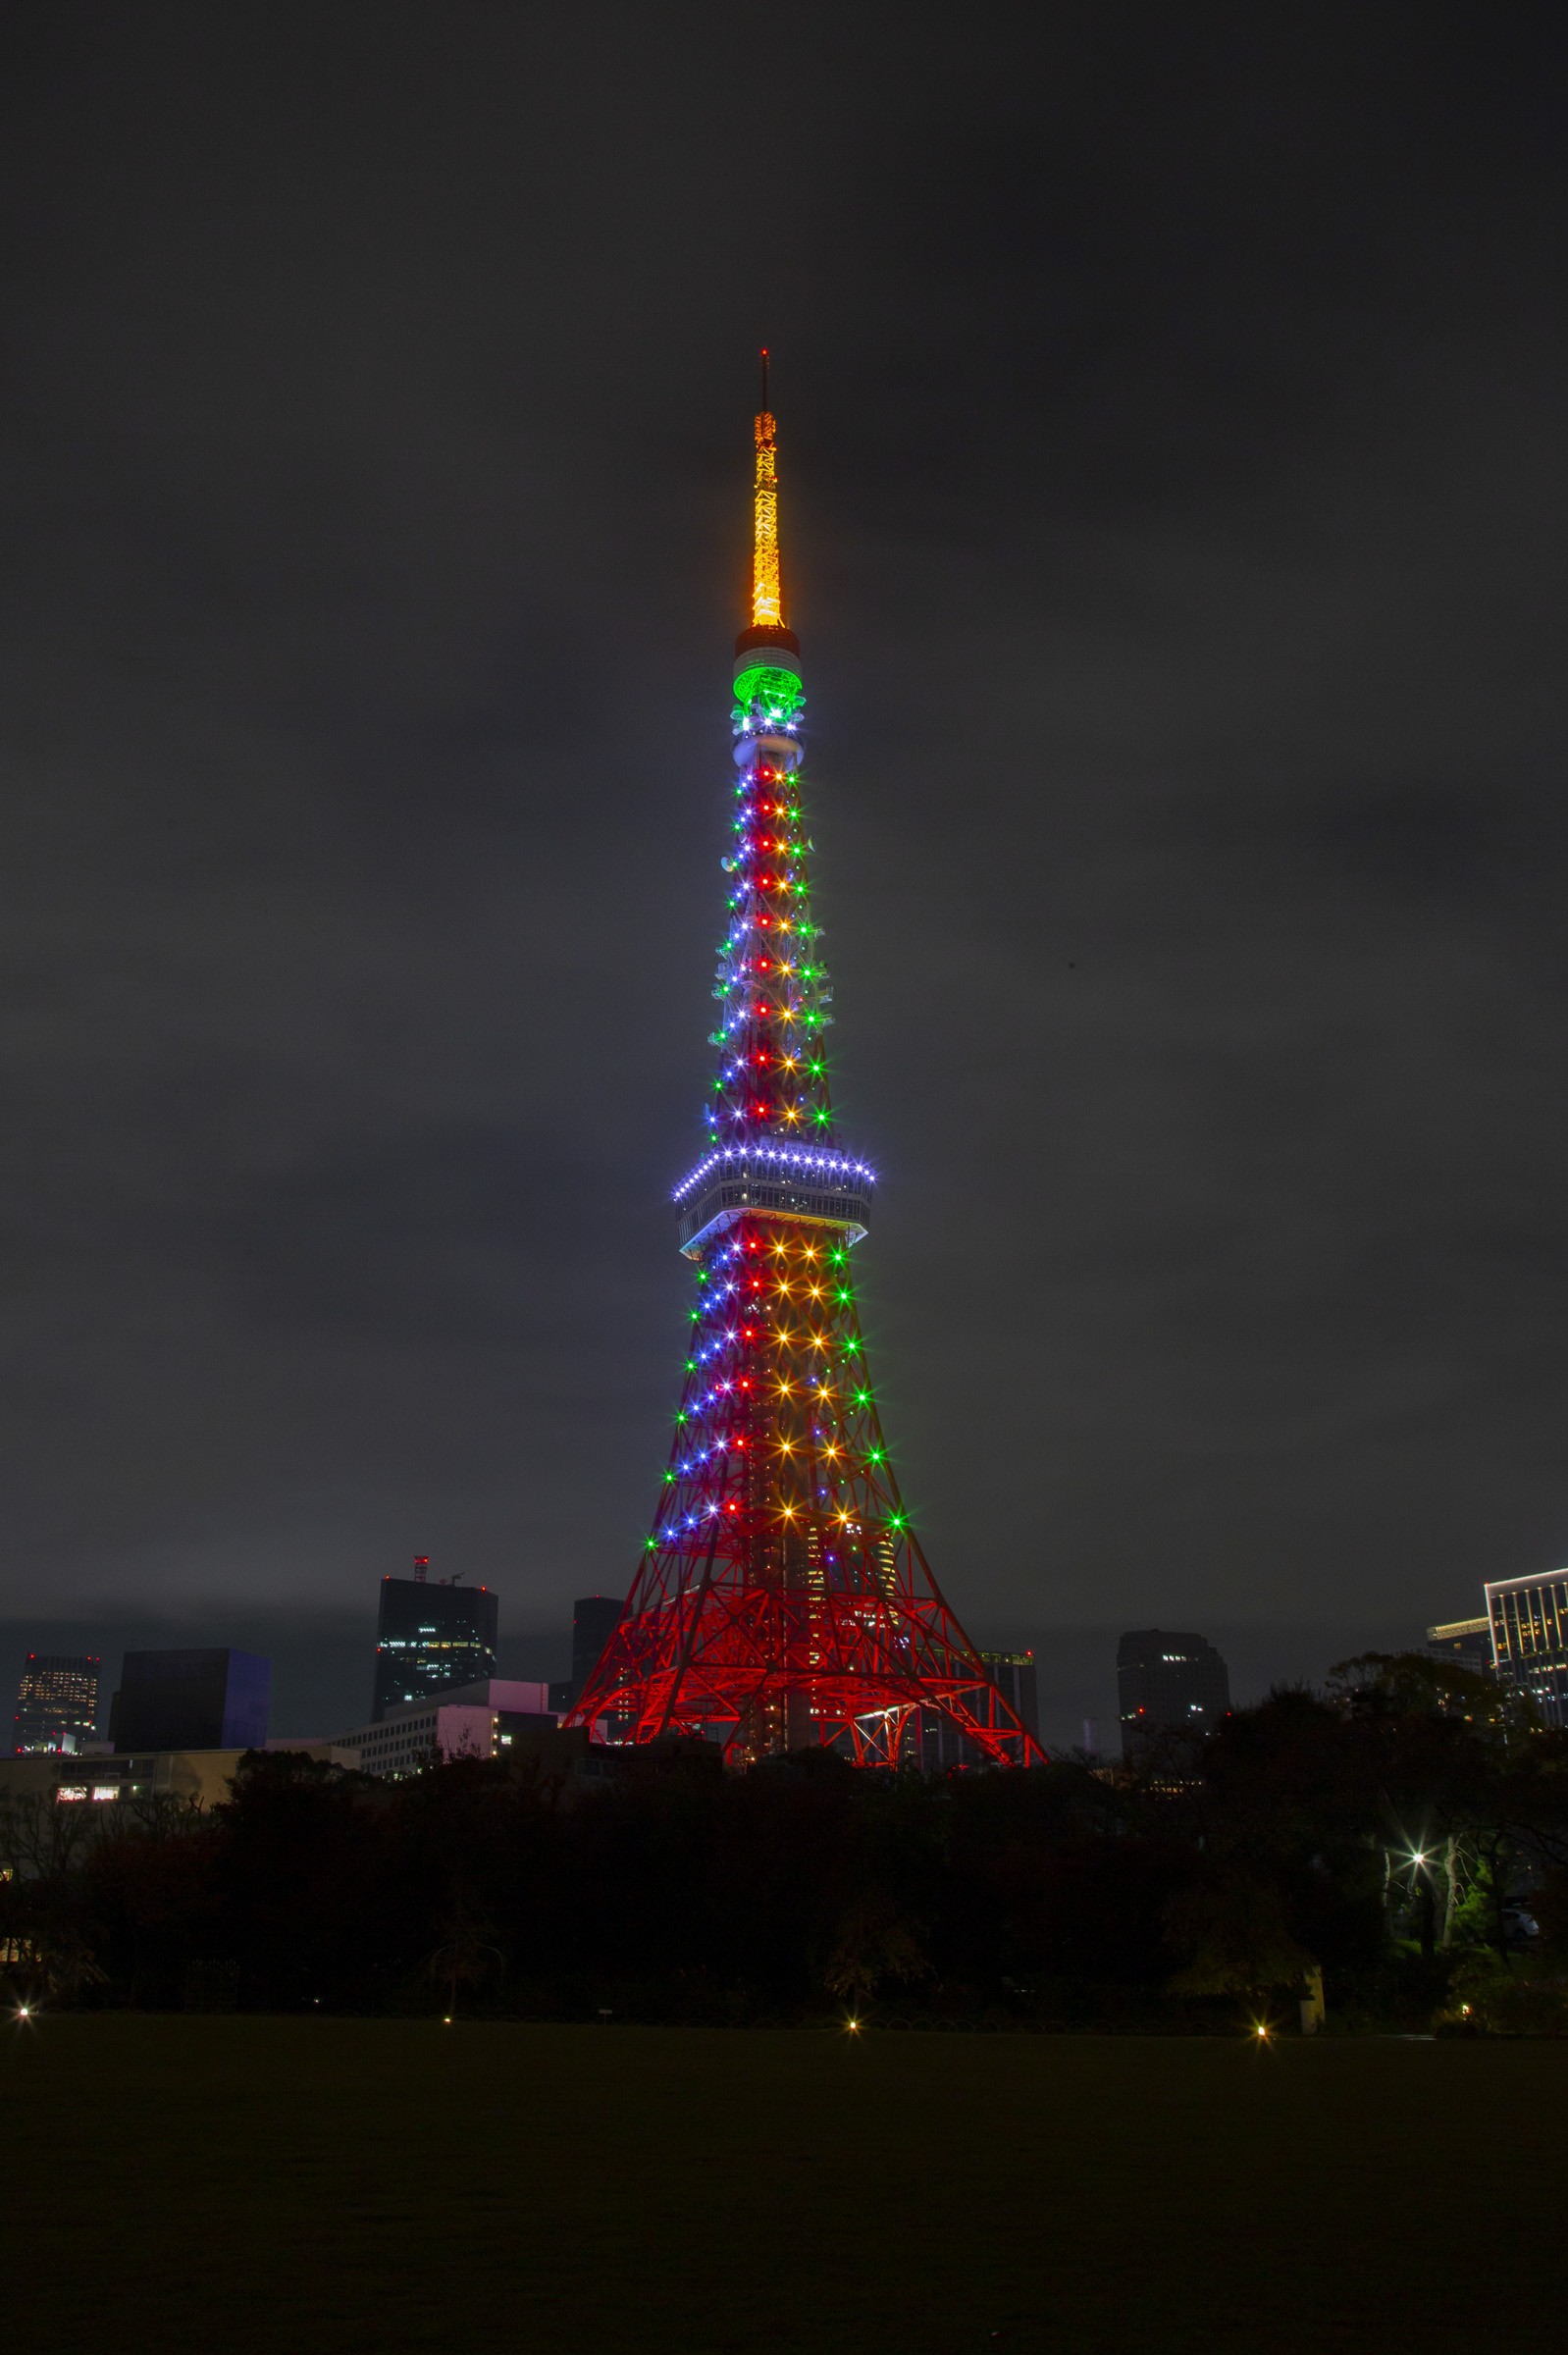 虹色に輝く東京タワー のフリー写真素材 フリー写真有 イメージガレージ